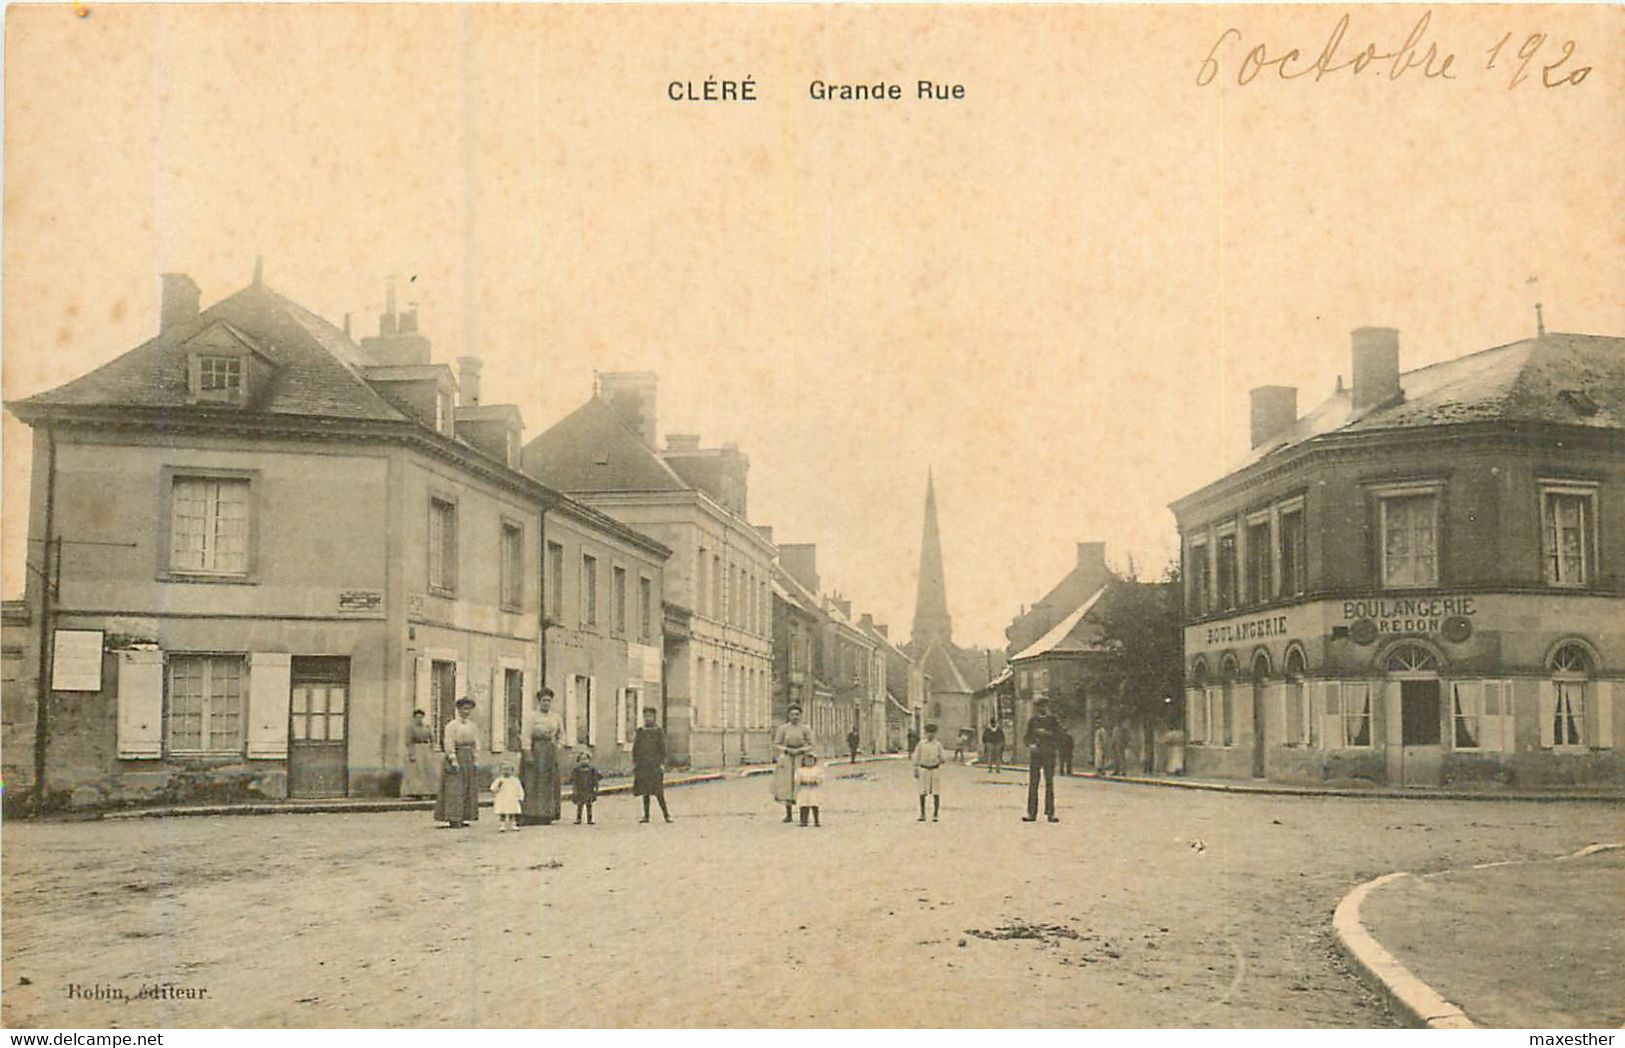 CLÈRÈ Grande Rue - Cléré-les-Pins